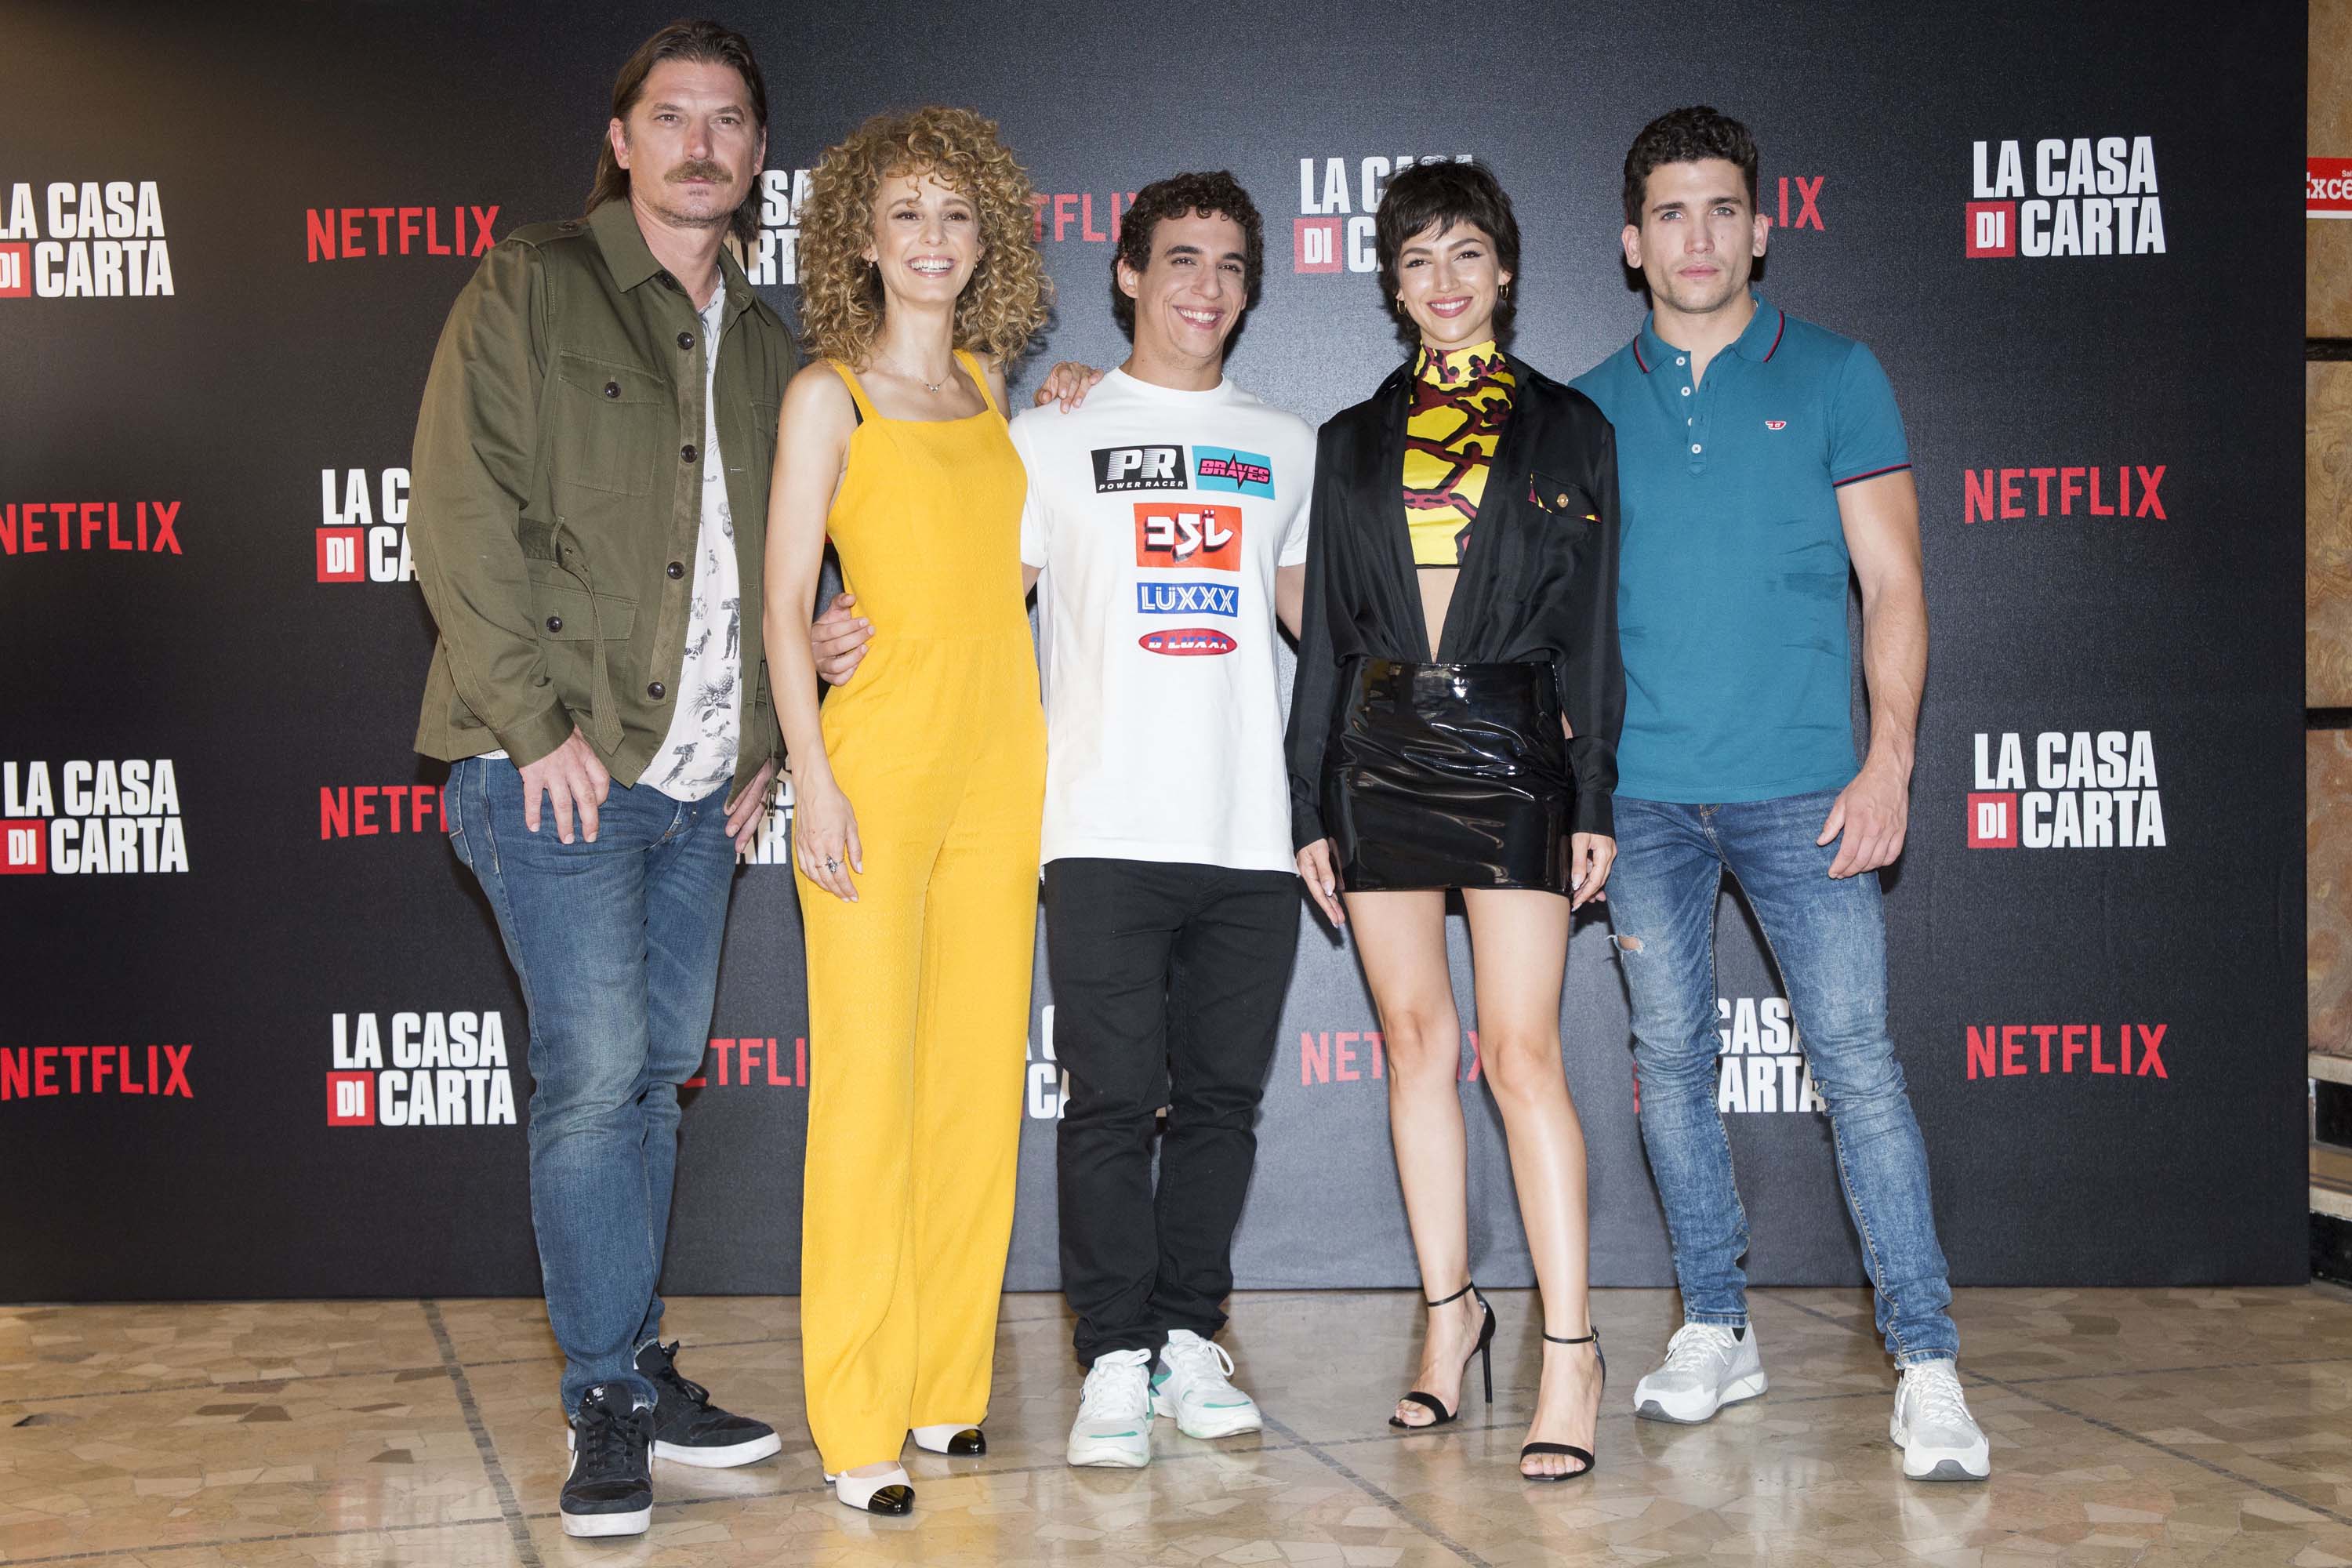 Ursula Corbero attends the photocall of the Netflix tv show “La Casa di Carta”